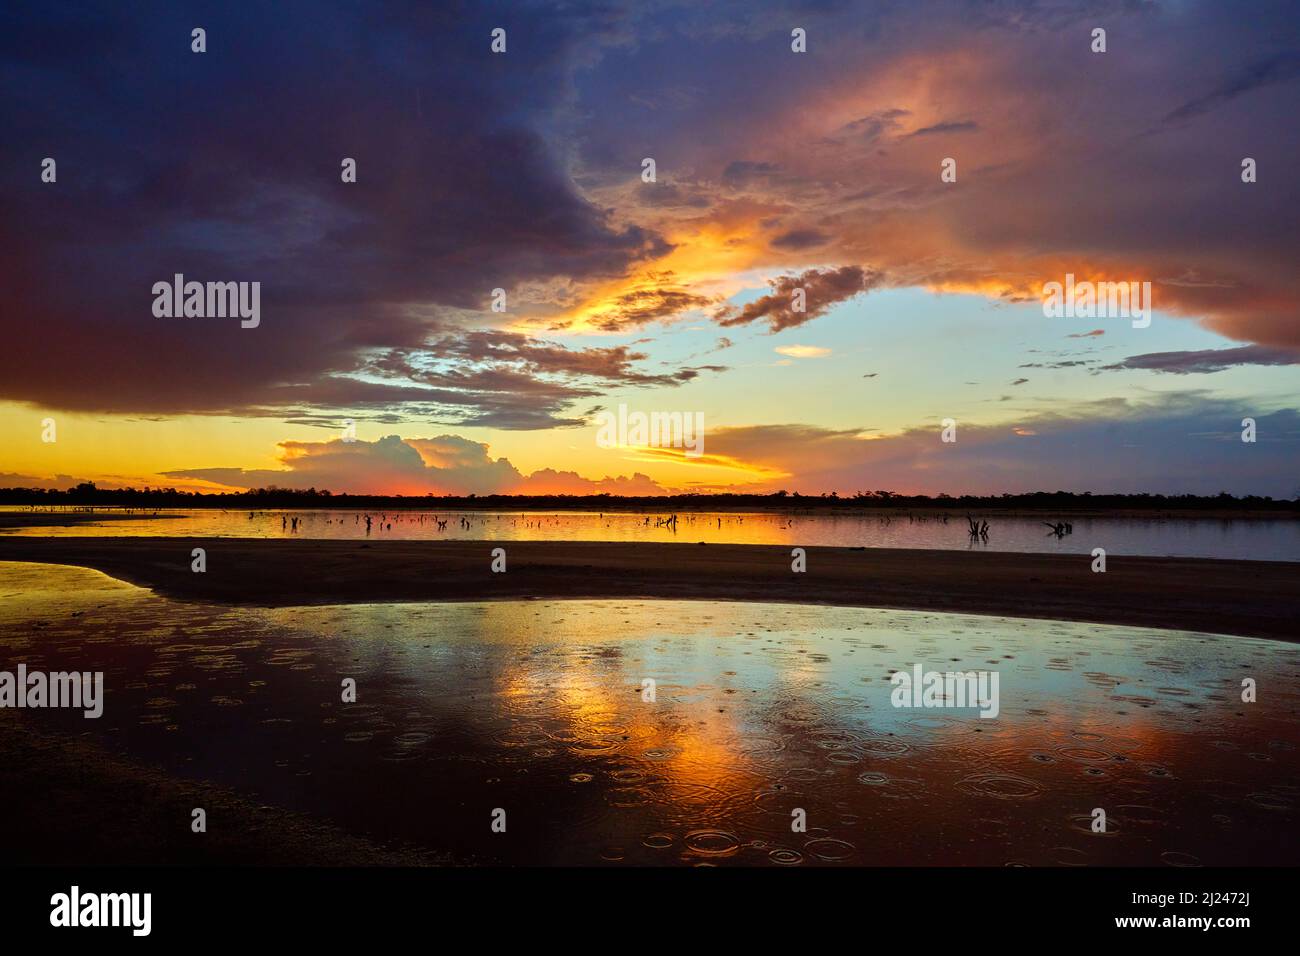 Das Ende eines heißen Tages in Summers im äußersten Nordwesten Victorias, mit Regentropfen, die in einen Salzsee fallen, und dramatischem Sonnenuntergang als Hintergrund. Stockfoto